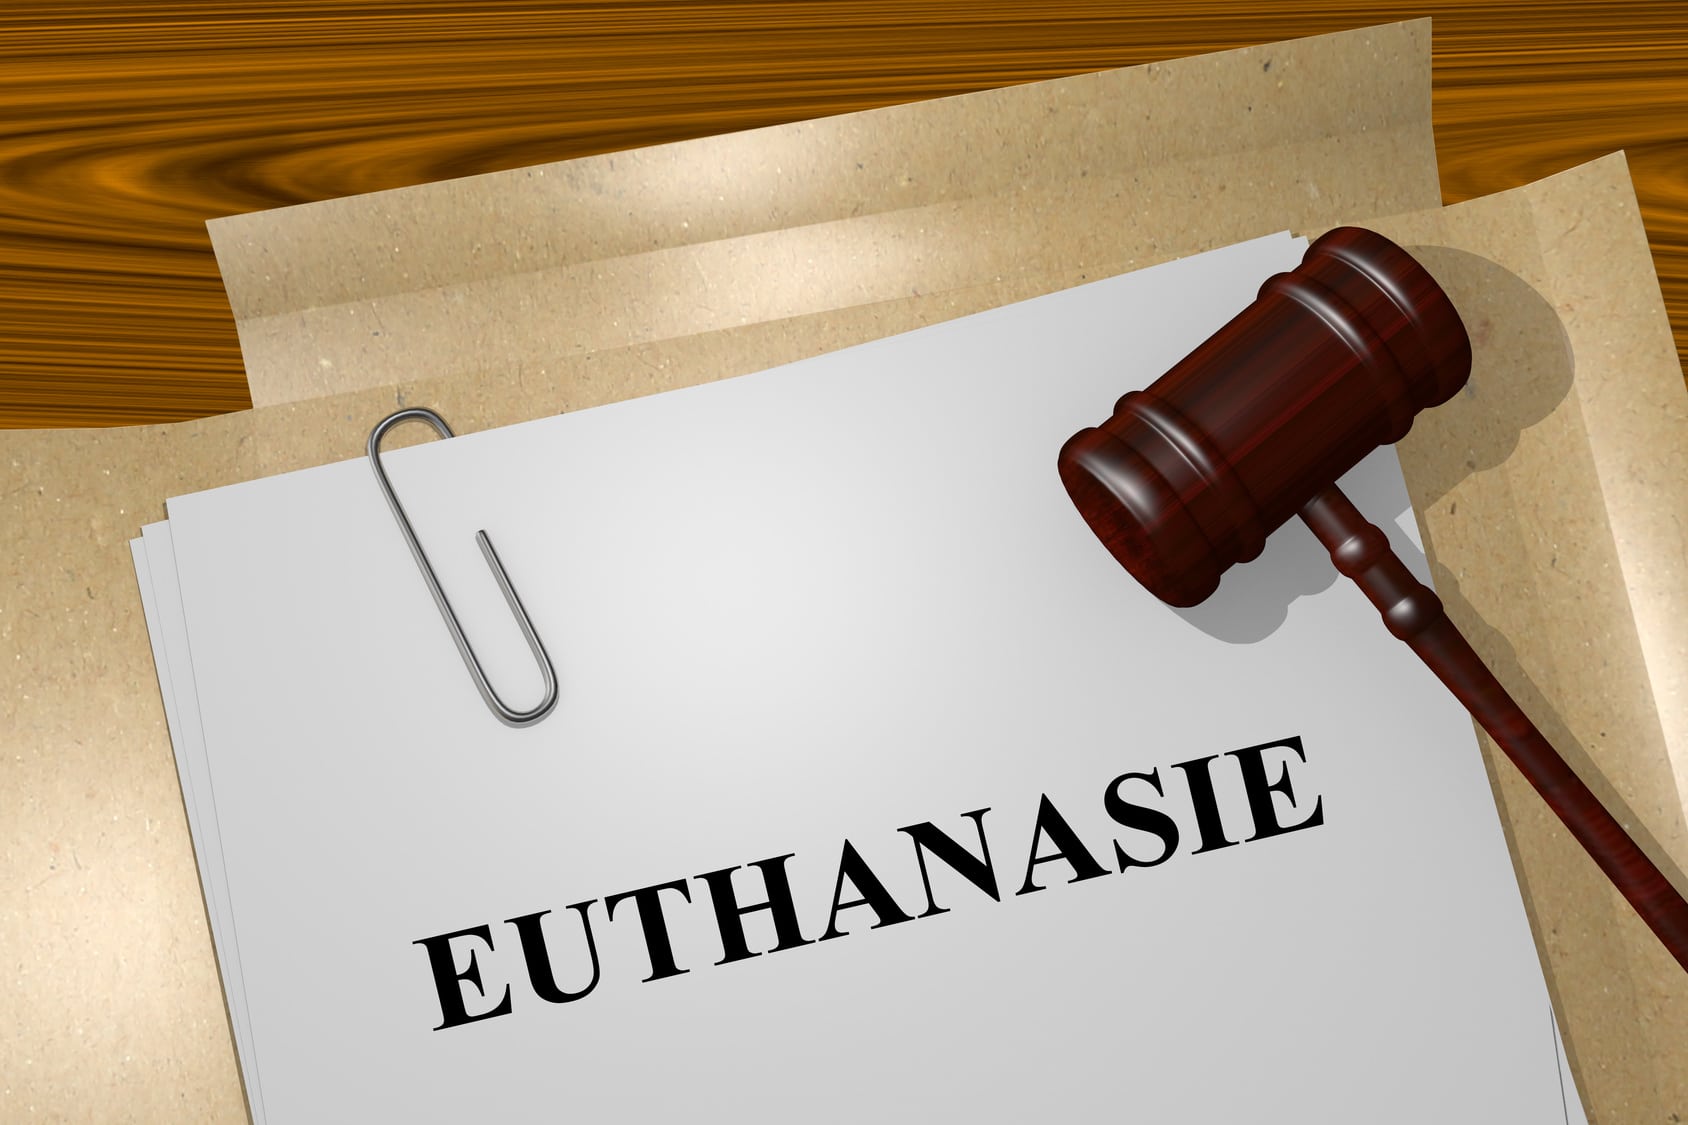 demande d'euthanasie demandes d'euthanasies analyse demandes persistantes d'euthanasie